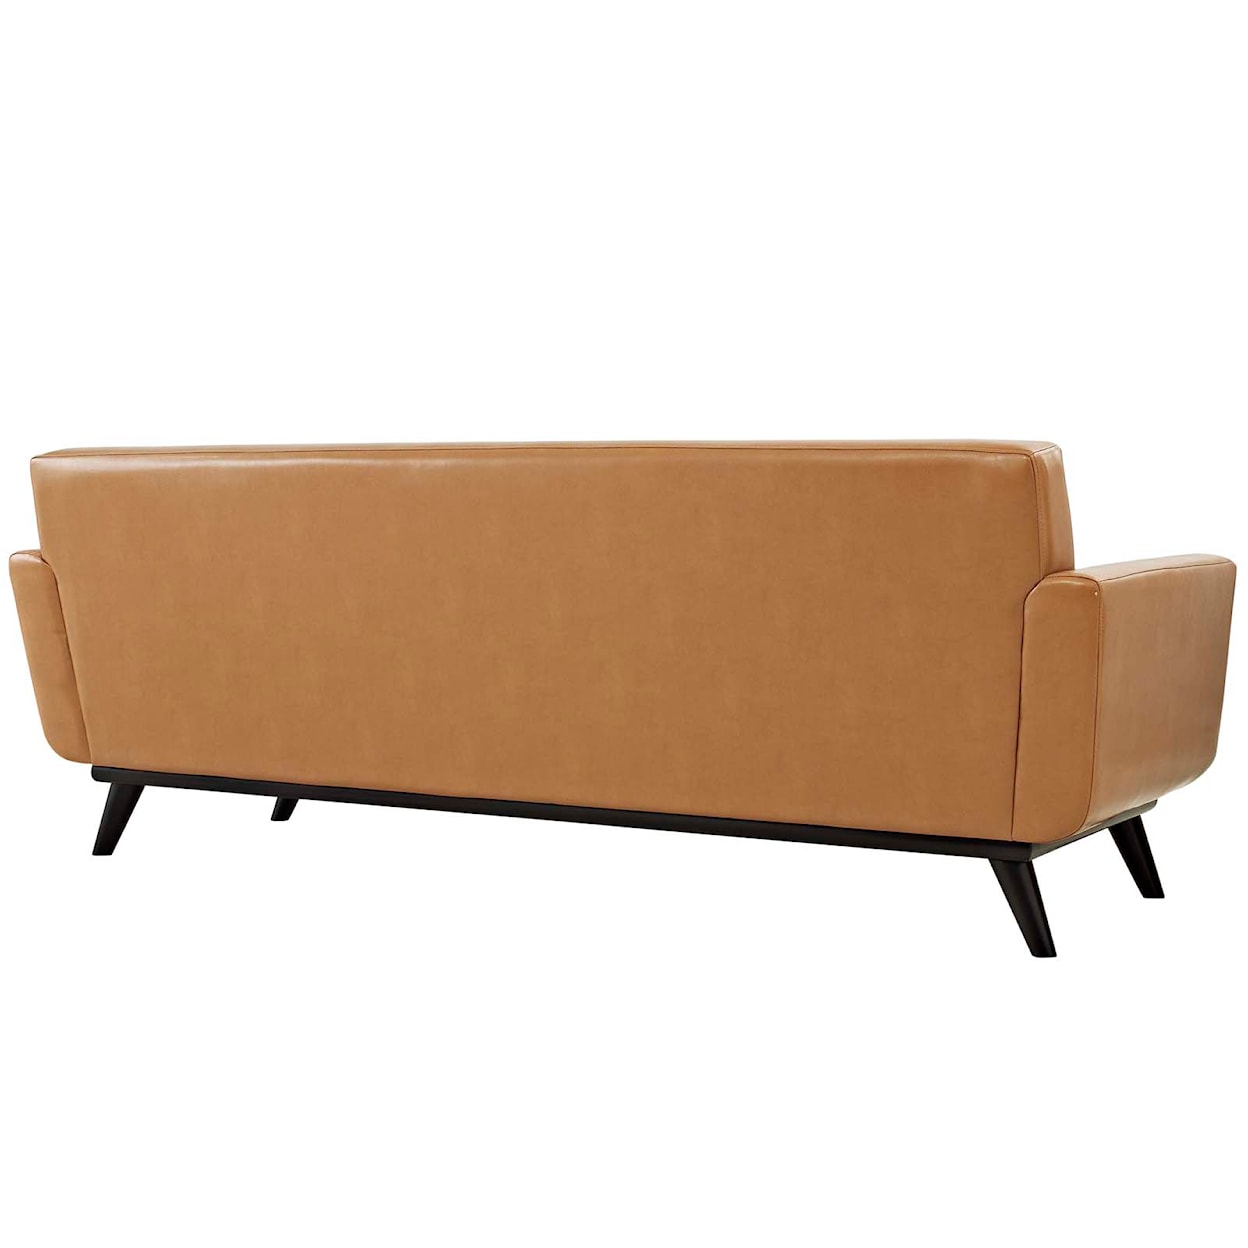 Modway Engage Sofa